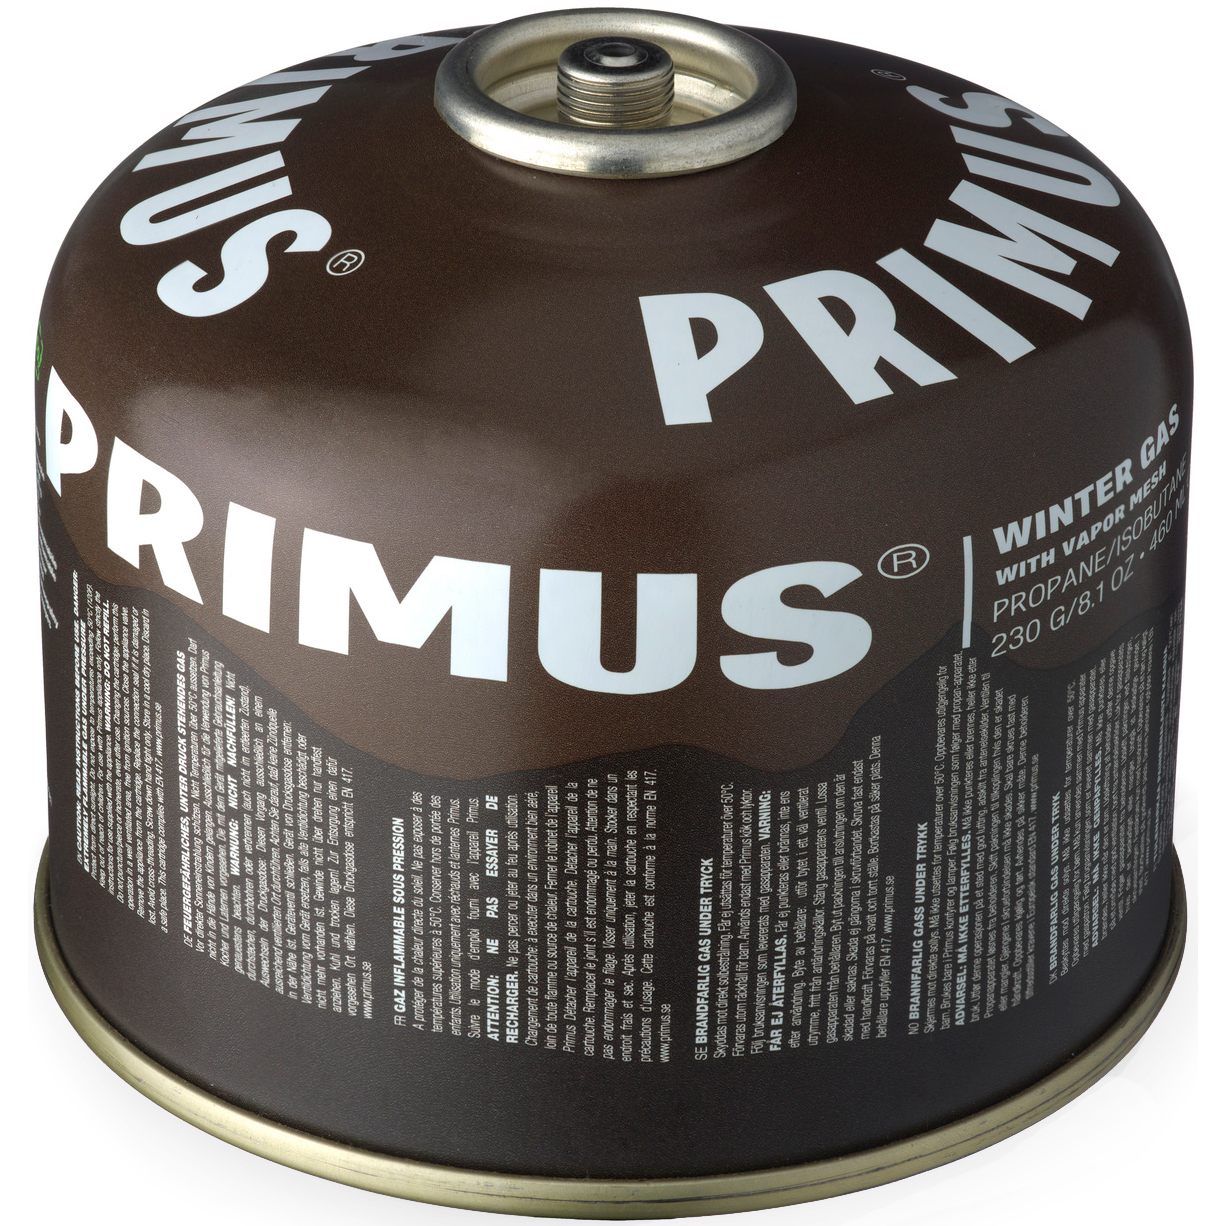 Productfoto van Primus Winter Gas Steekpatroon - 230g